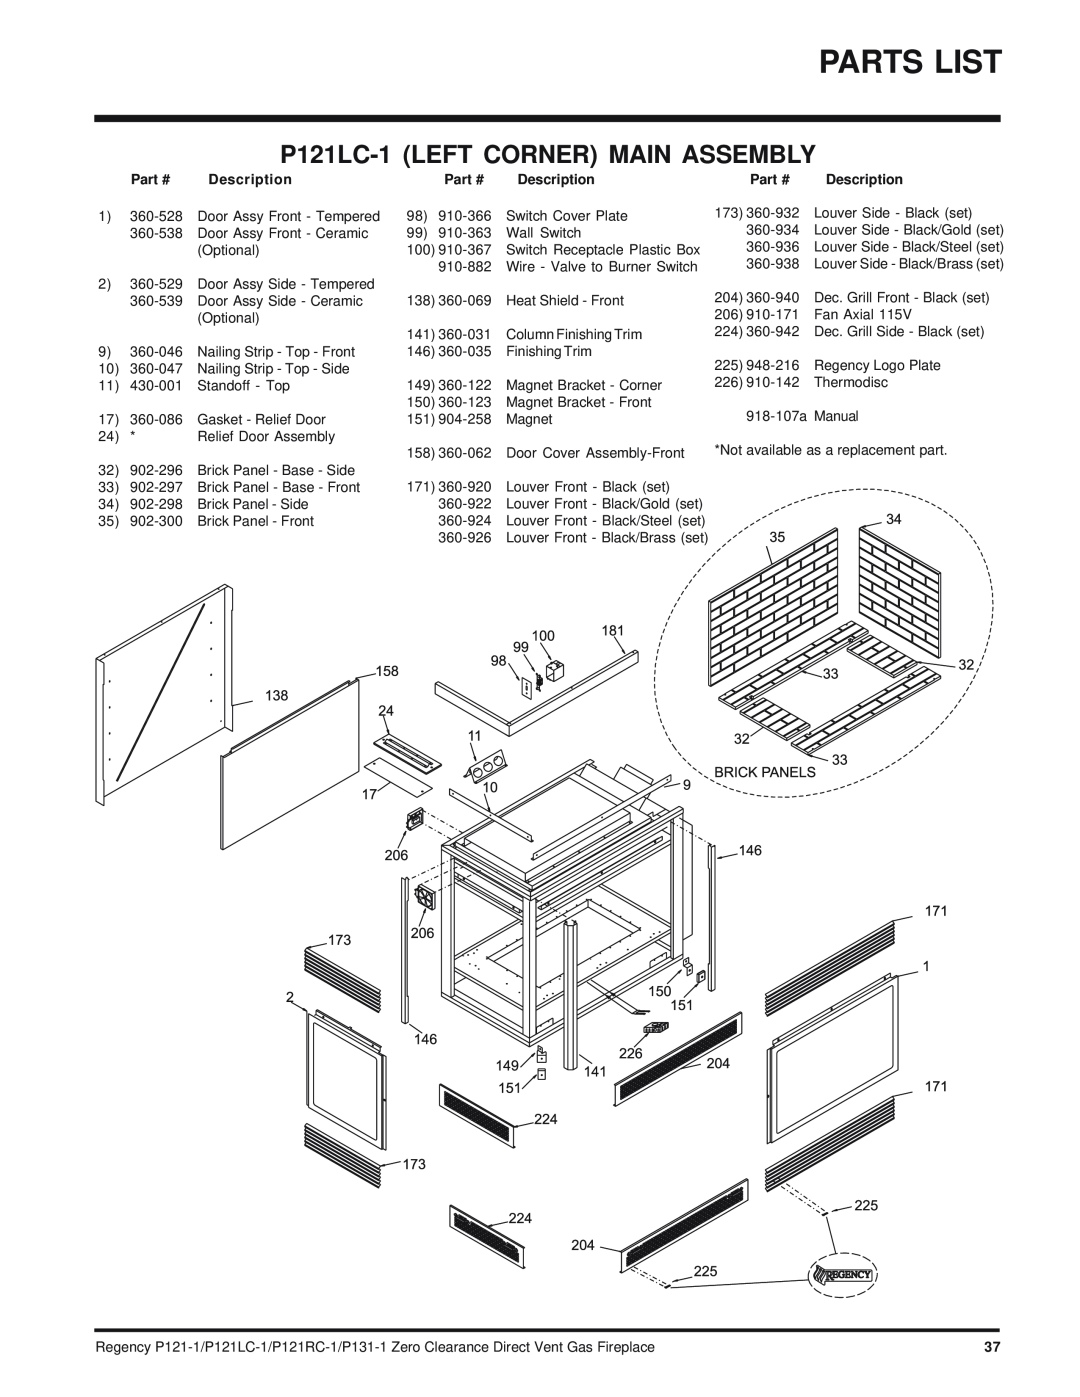 Regency P121RC, P131 installation manual Parts List, P121LC-1LEFT CORNER MAIN ASSEMBLY, Part # Description 